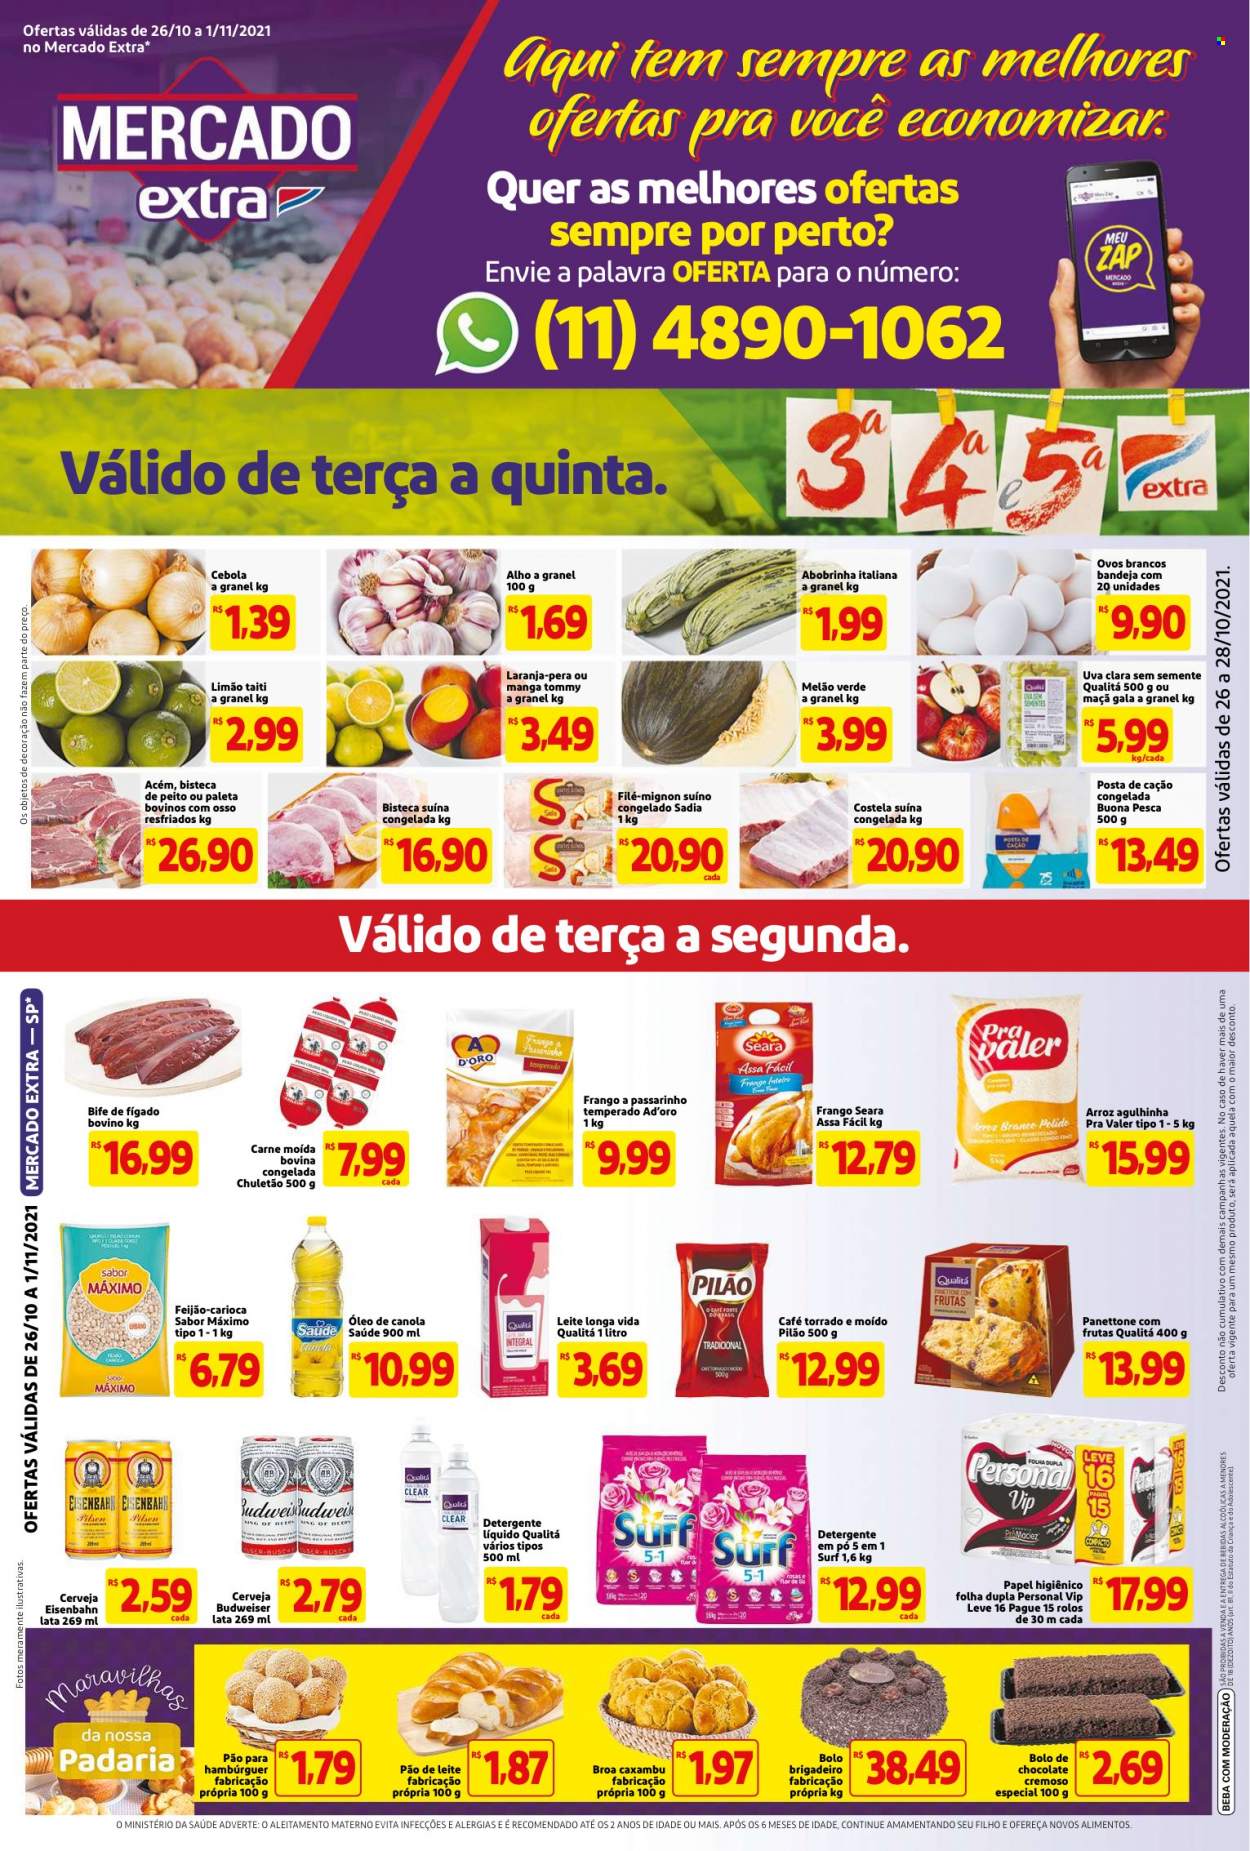 Encarte Mercado Extra  - 26.10.2021 - 01.11.2021.